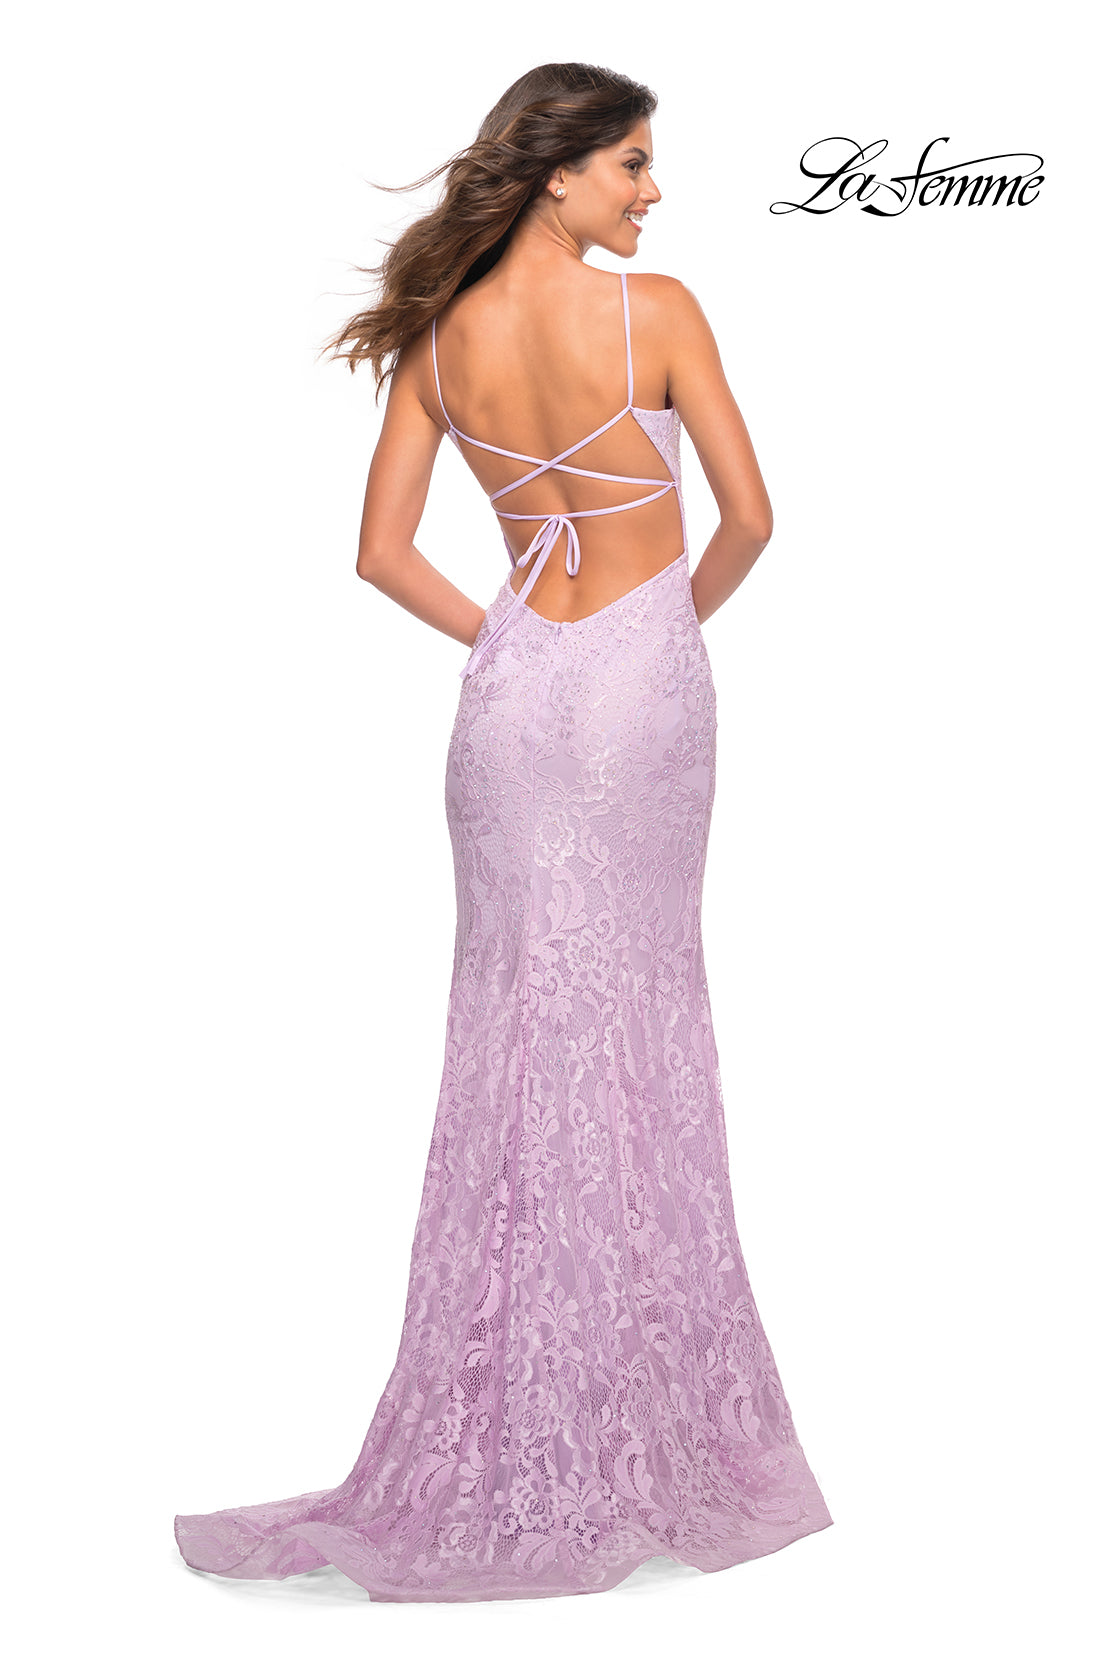 La Femme Stretch Lace Long Strappy-Back Prom Dress